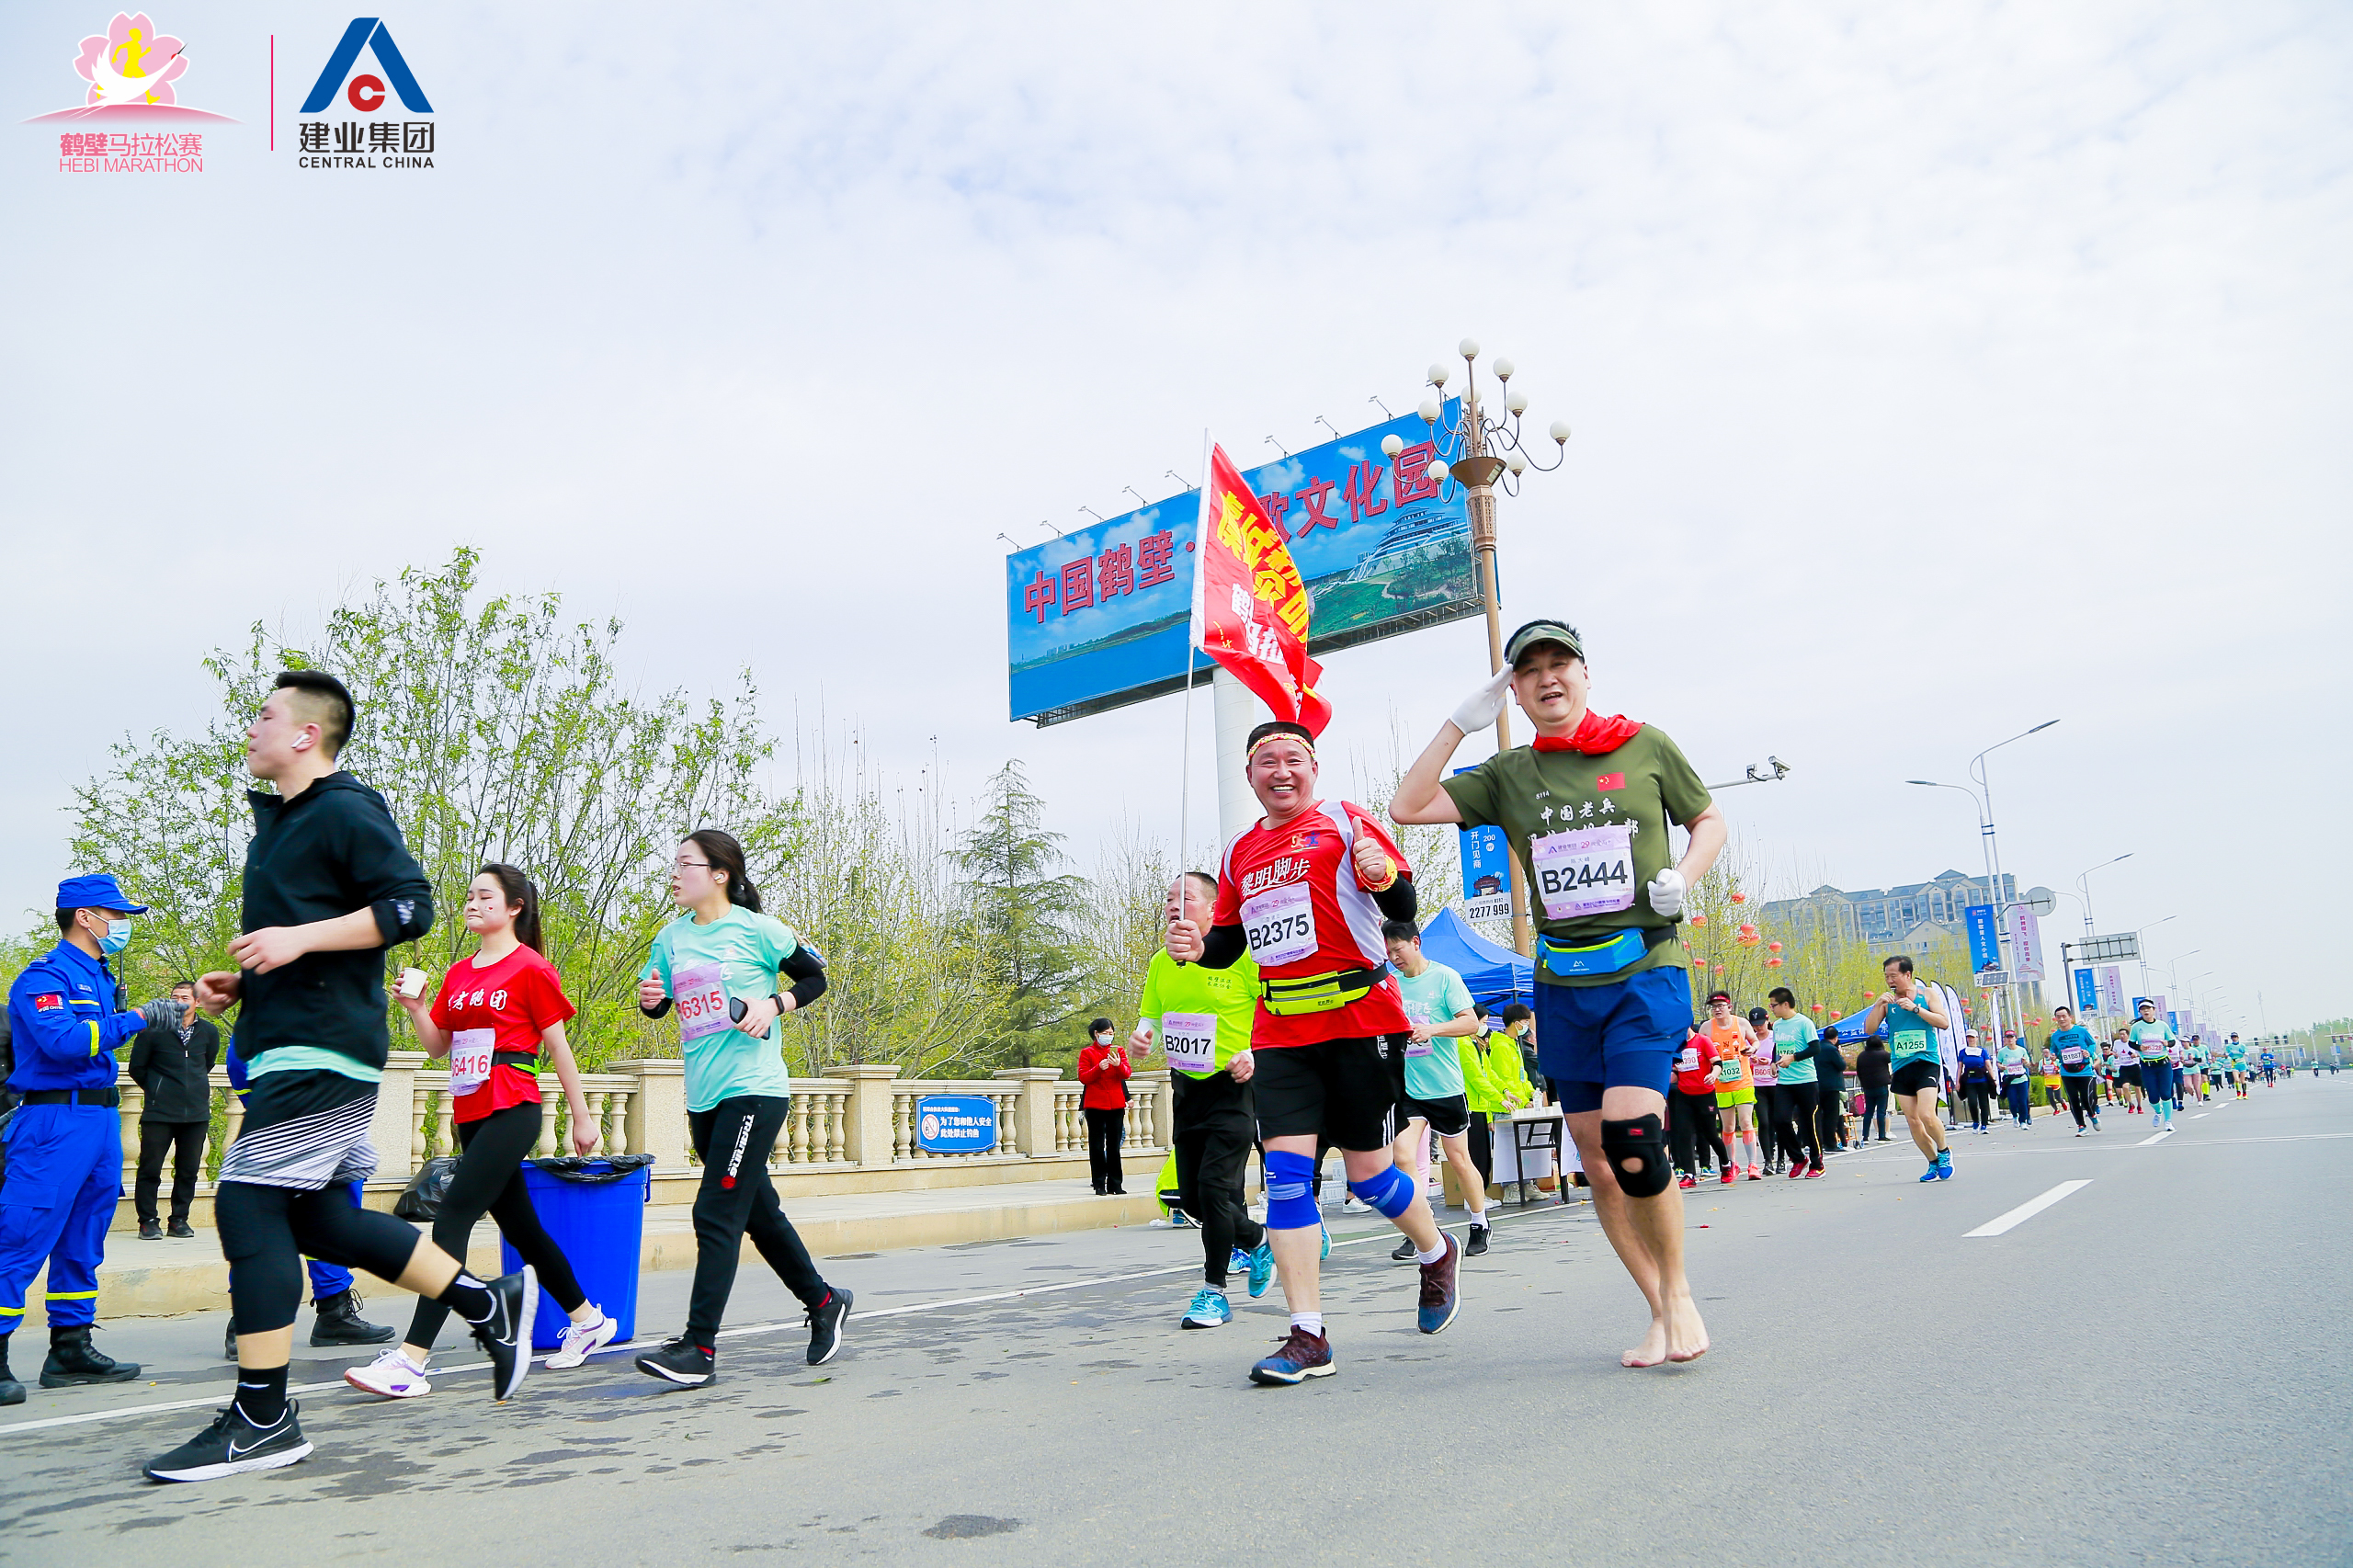 2021鹤壁马拉松赛成功举行 万余名选手激情开跑